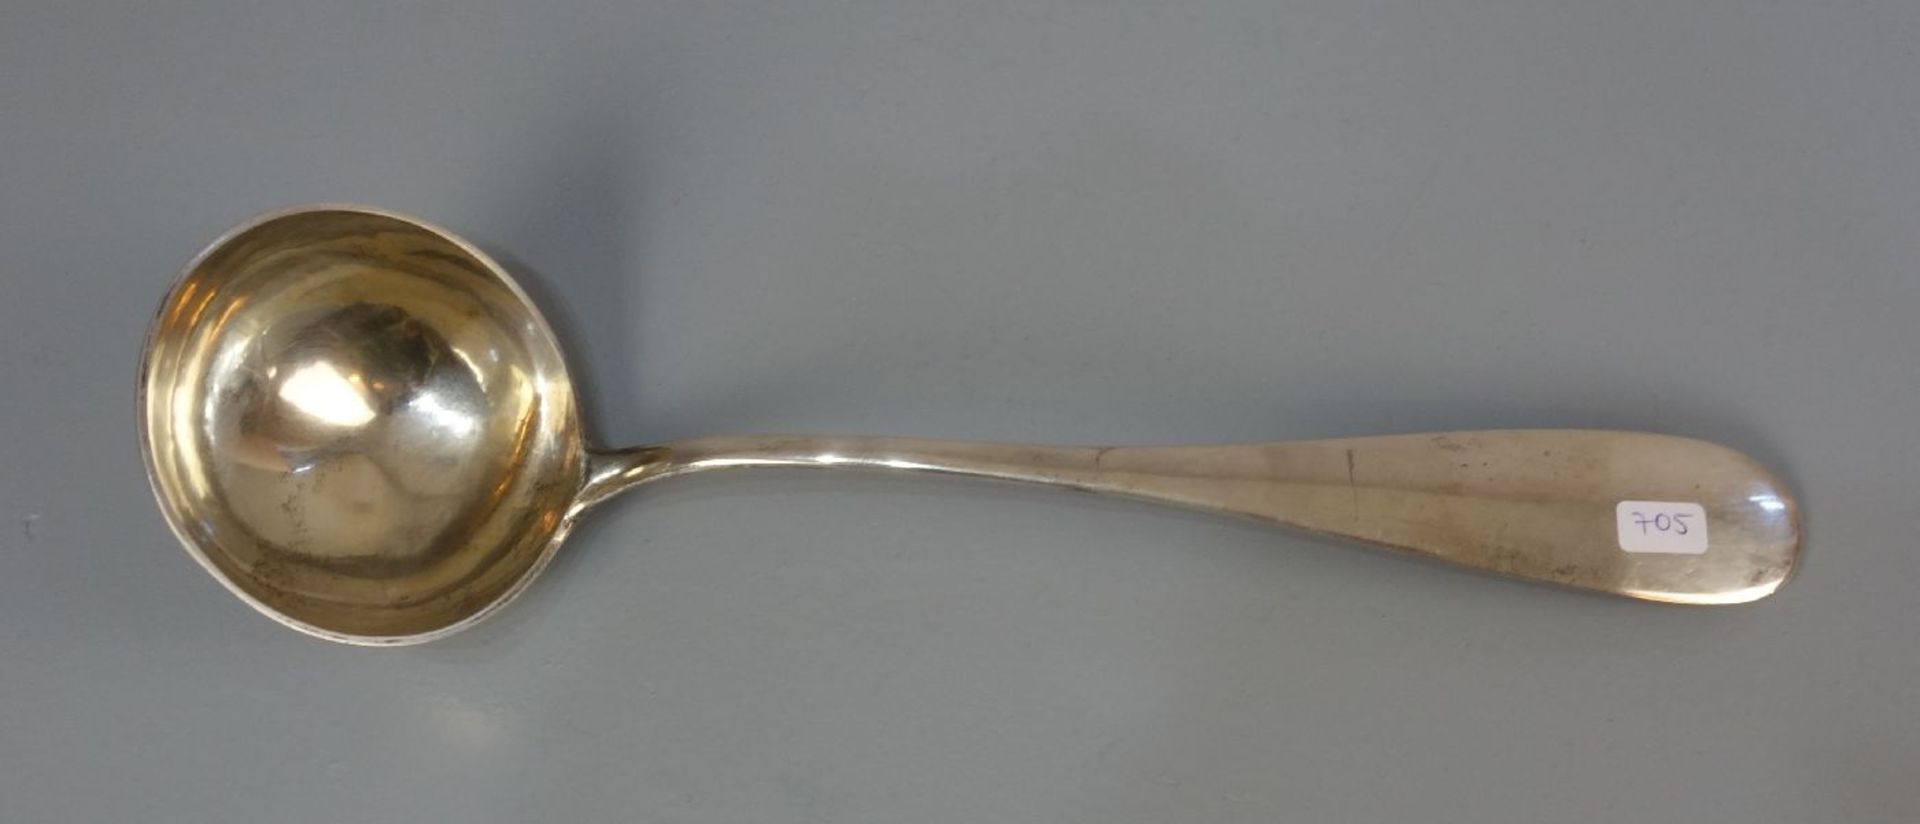 GROSSE VORLEGEKELLE / SUPPENKELLE / large serving ladle, 19. Jh., 800er Silber, 201,5 Gramm.